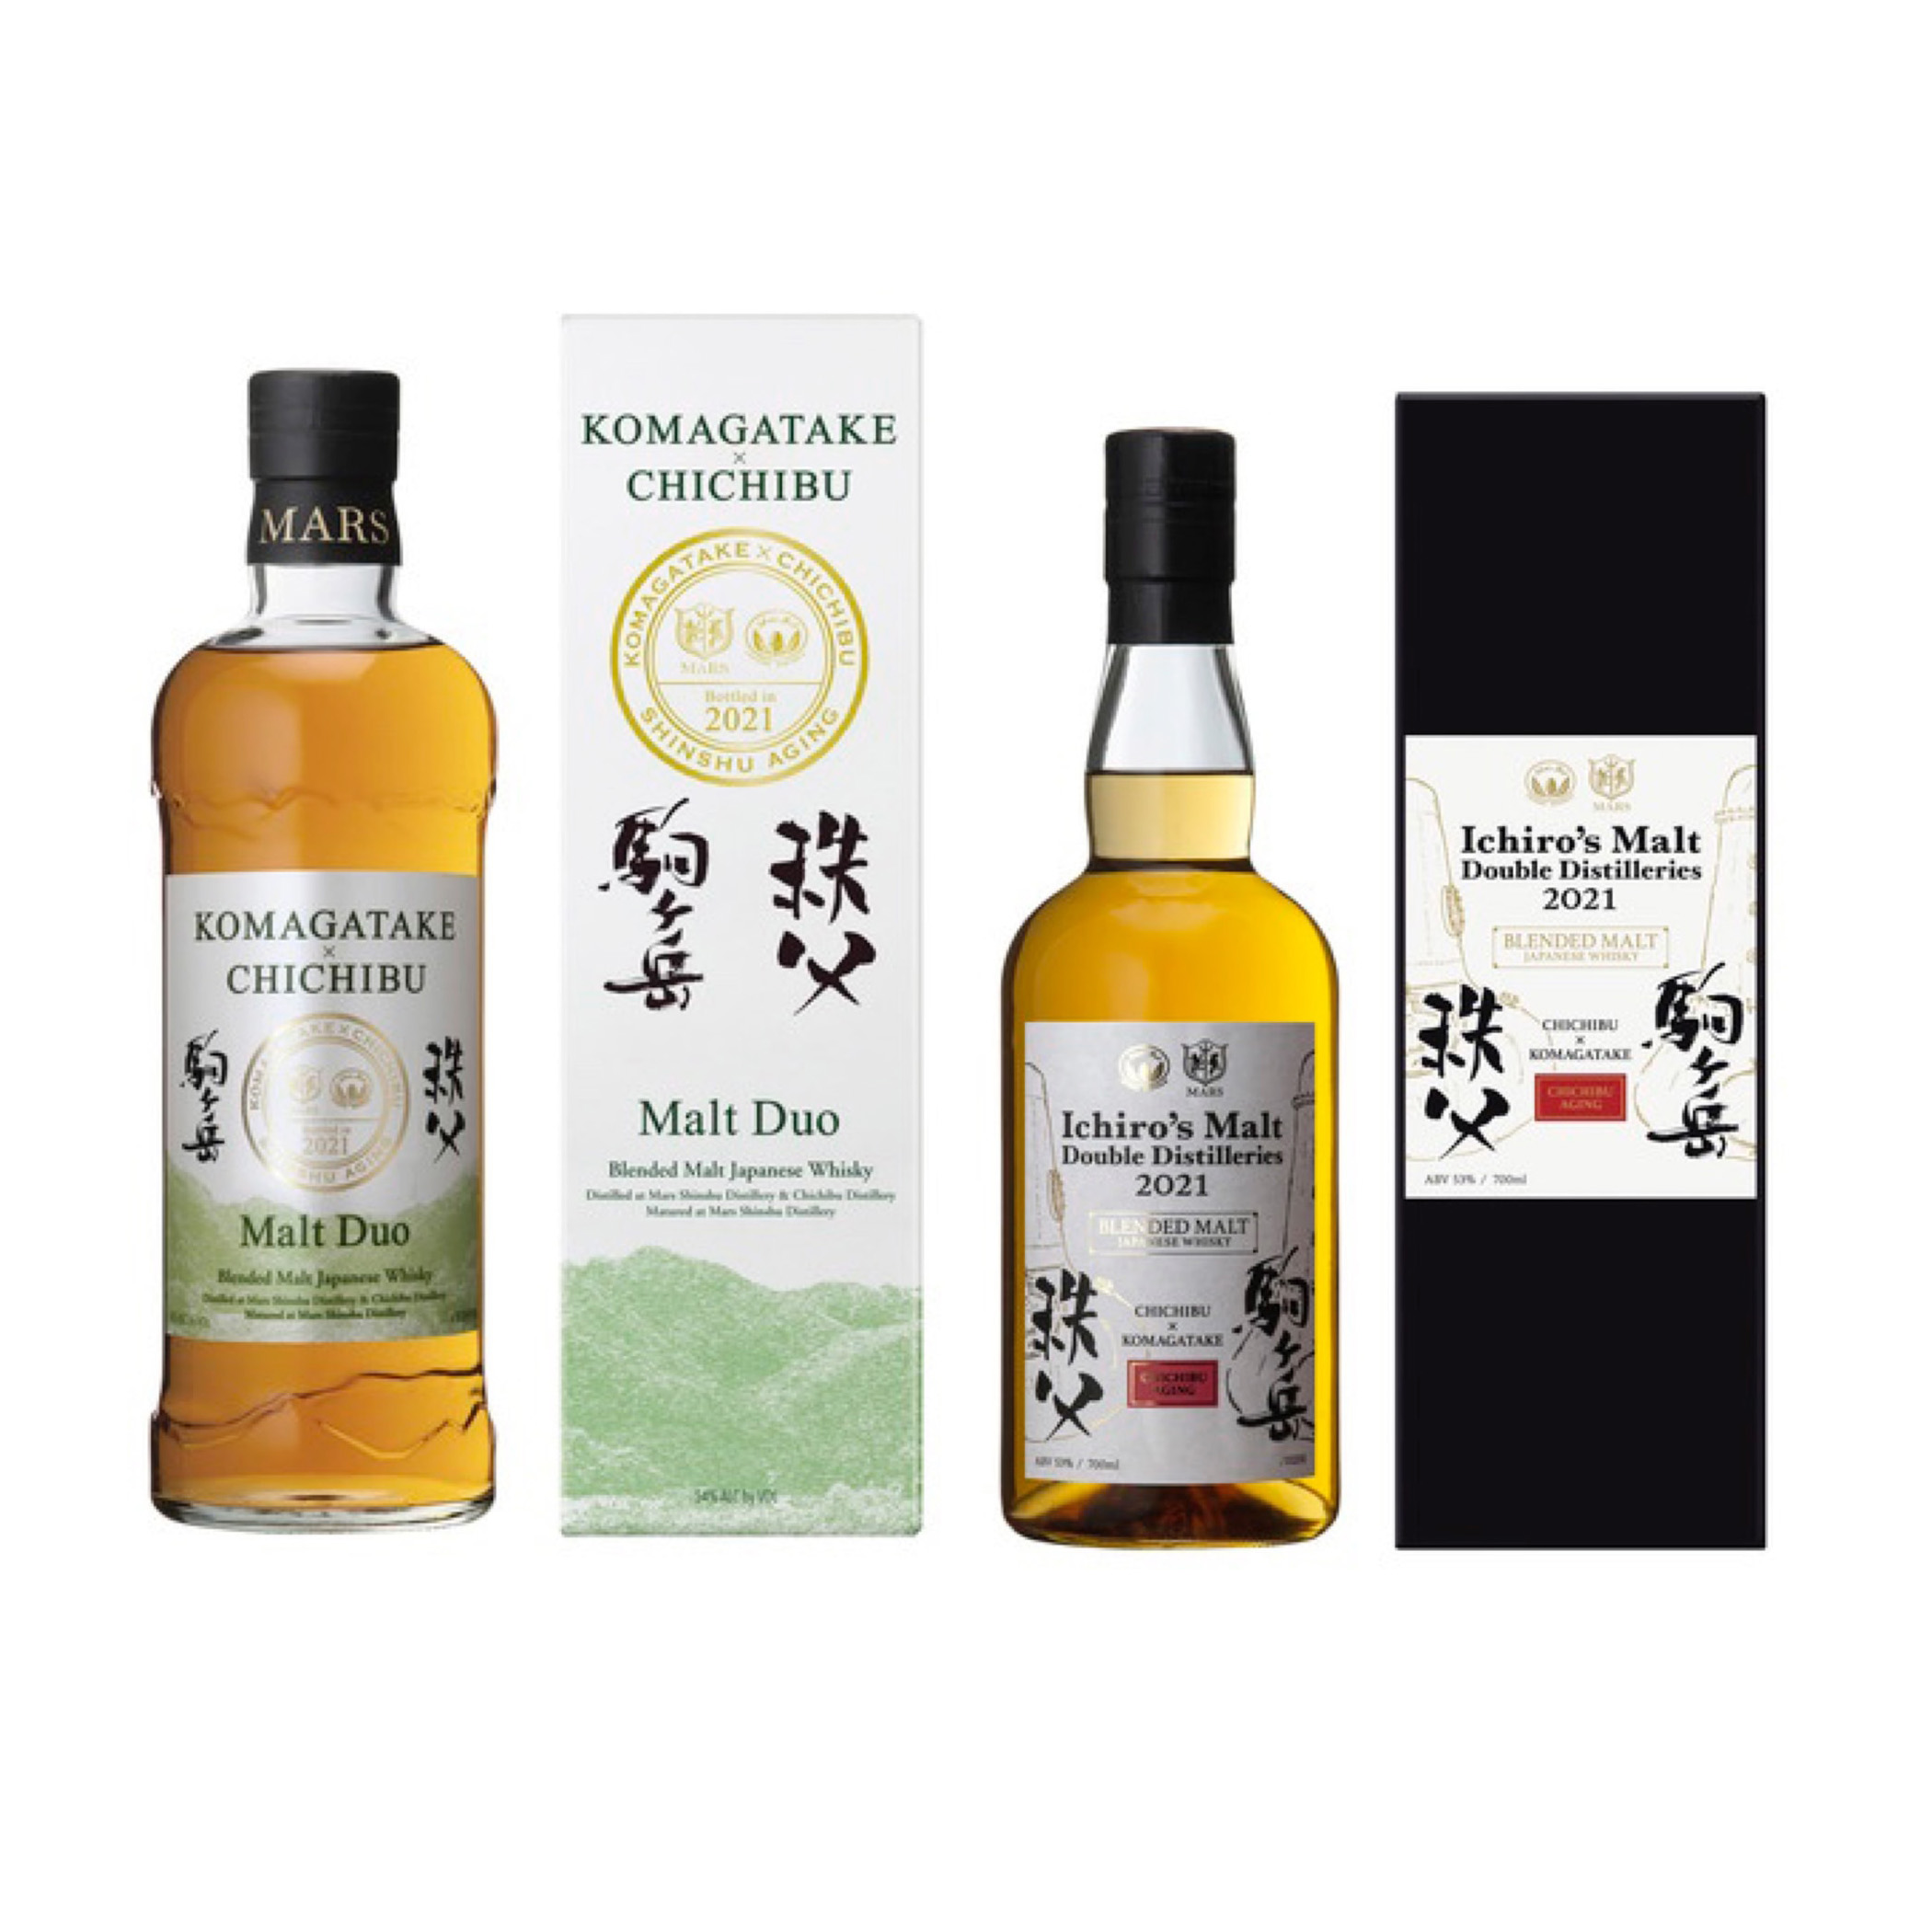 駒ヶ岳Mars Komagatake × 秩父Chichibu Collection 2021 Blended Whisky